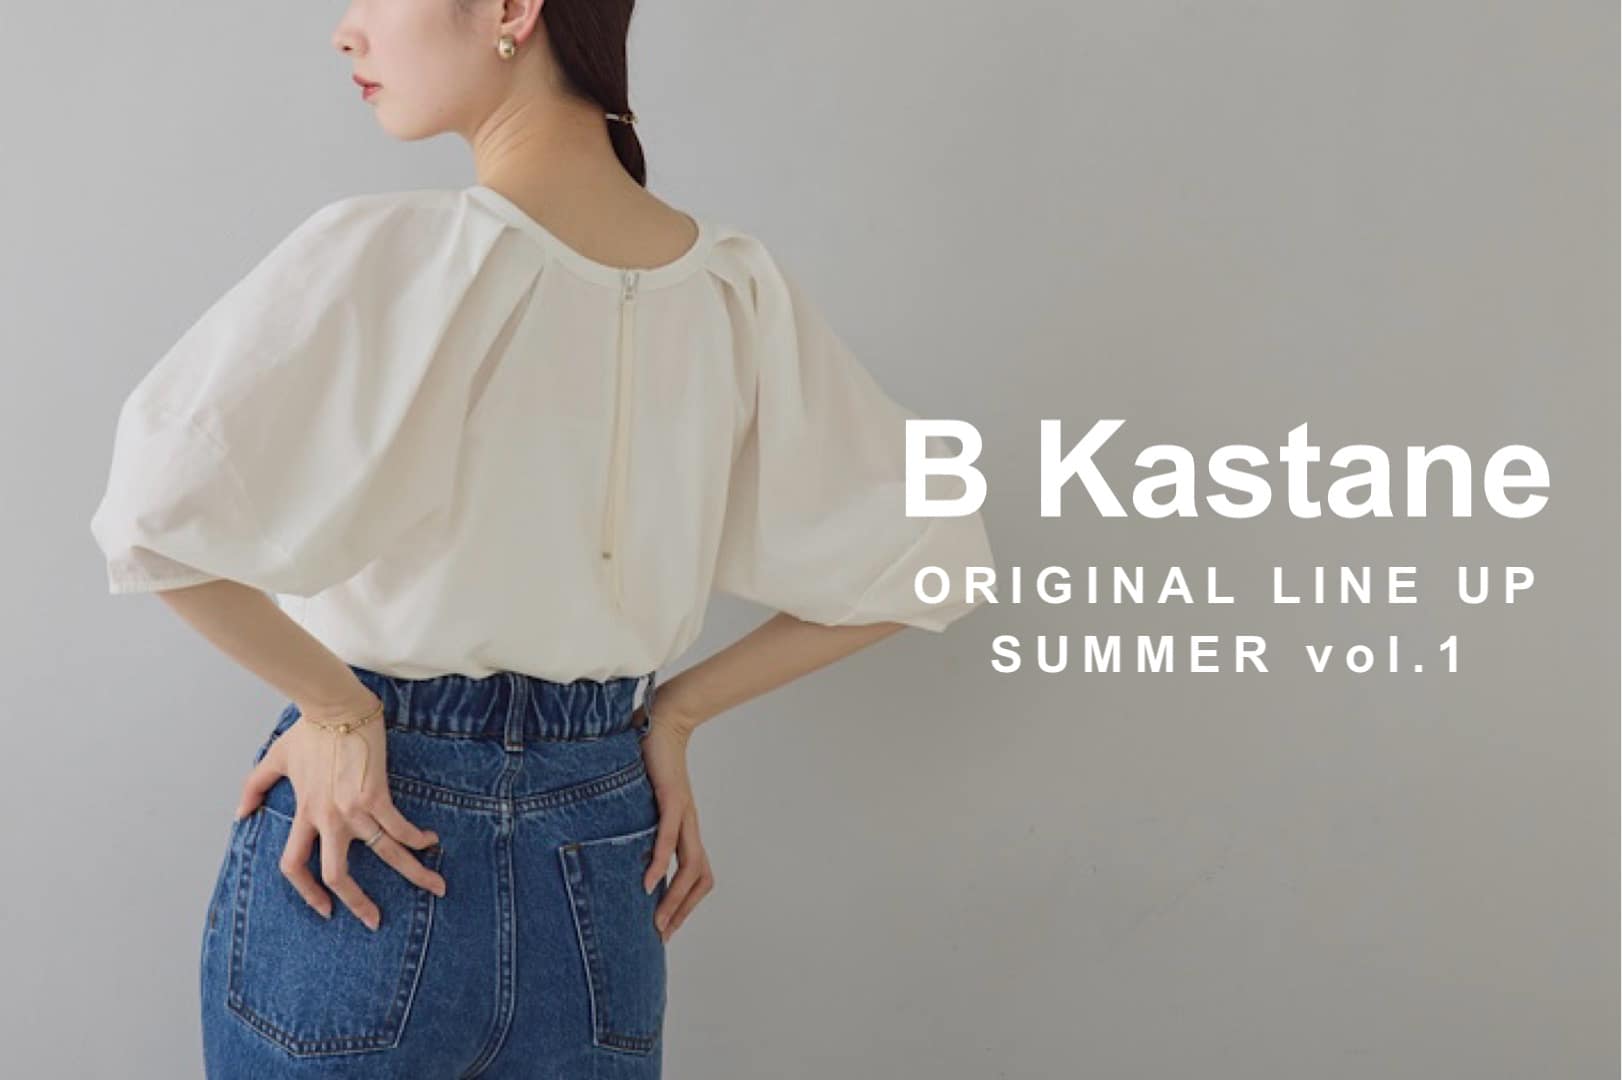 Kastane 【B Kastane】ベーシックライン新作アイテム